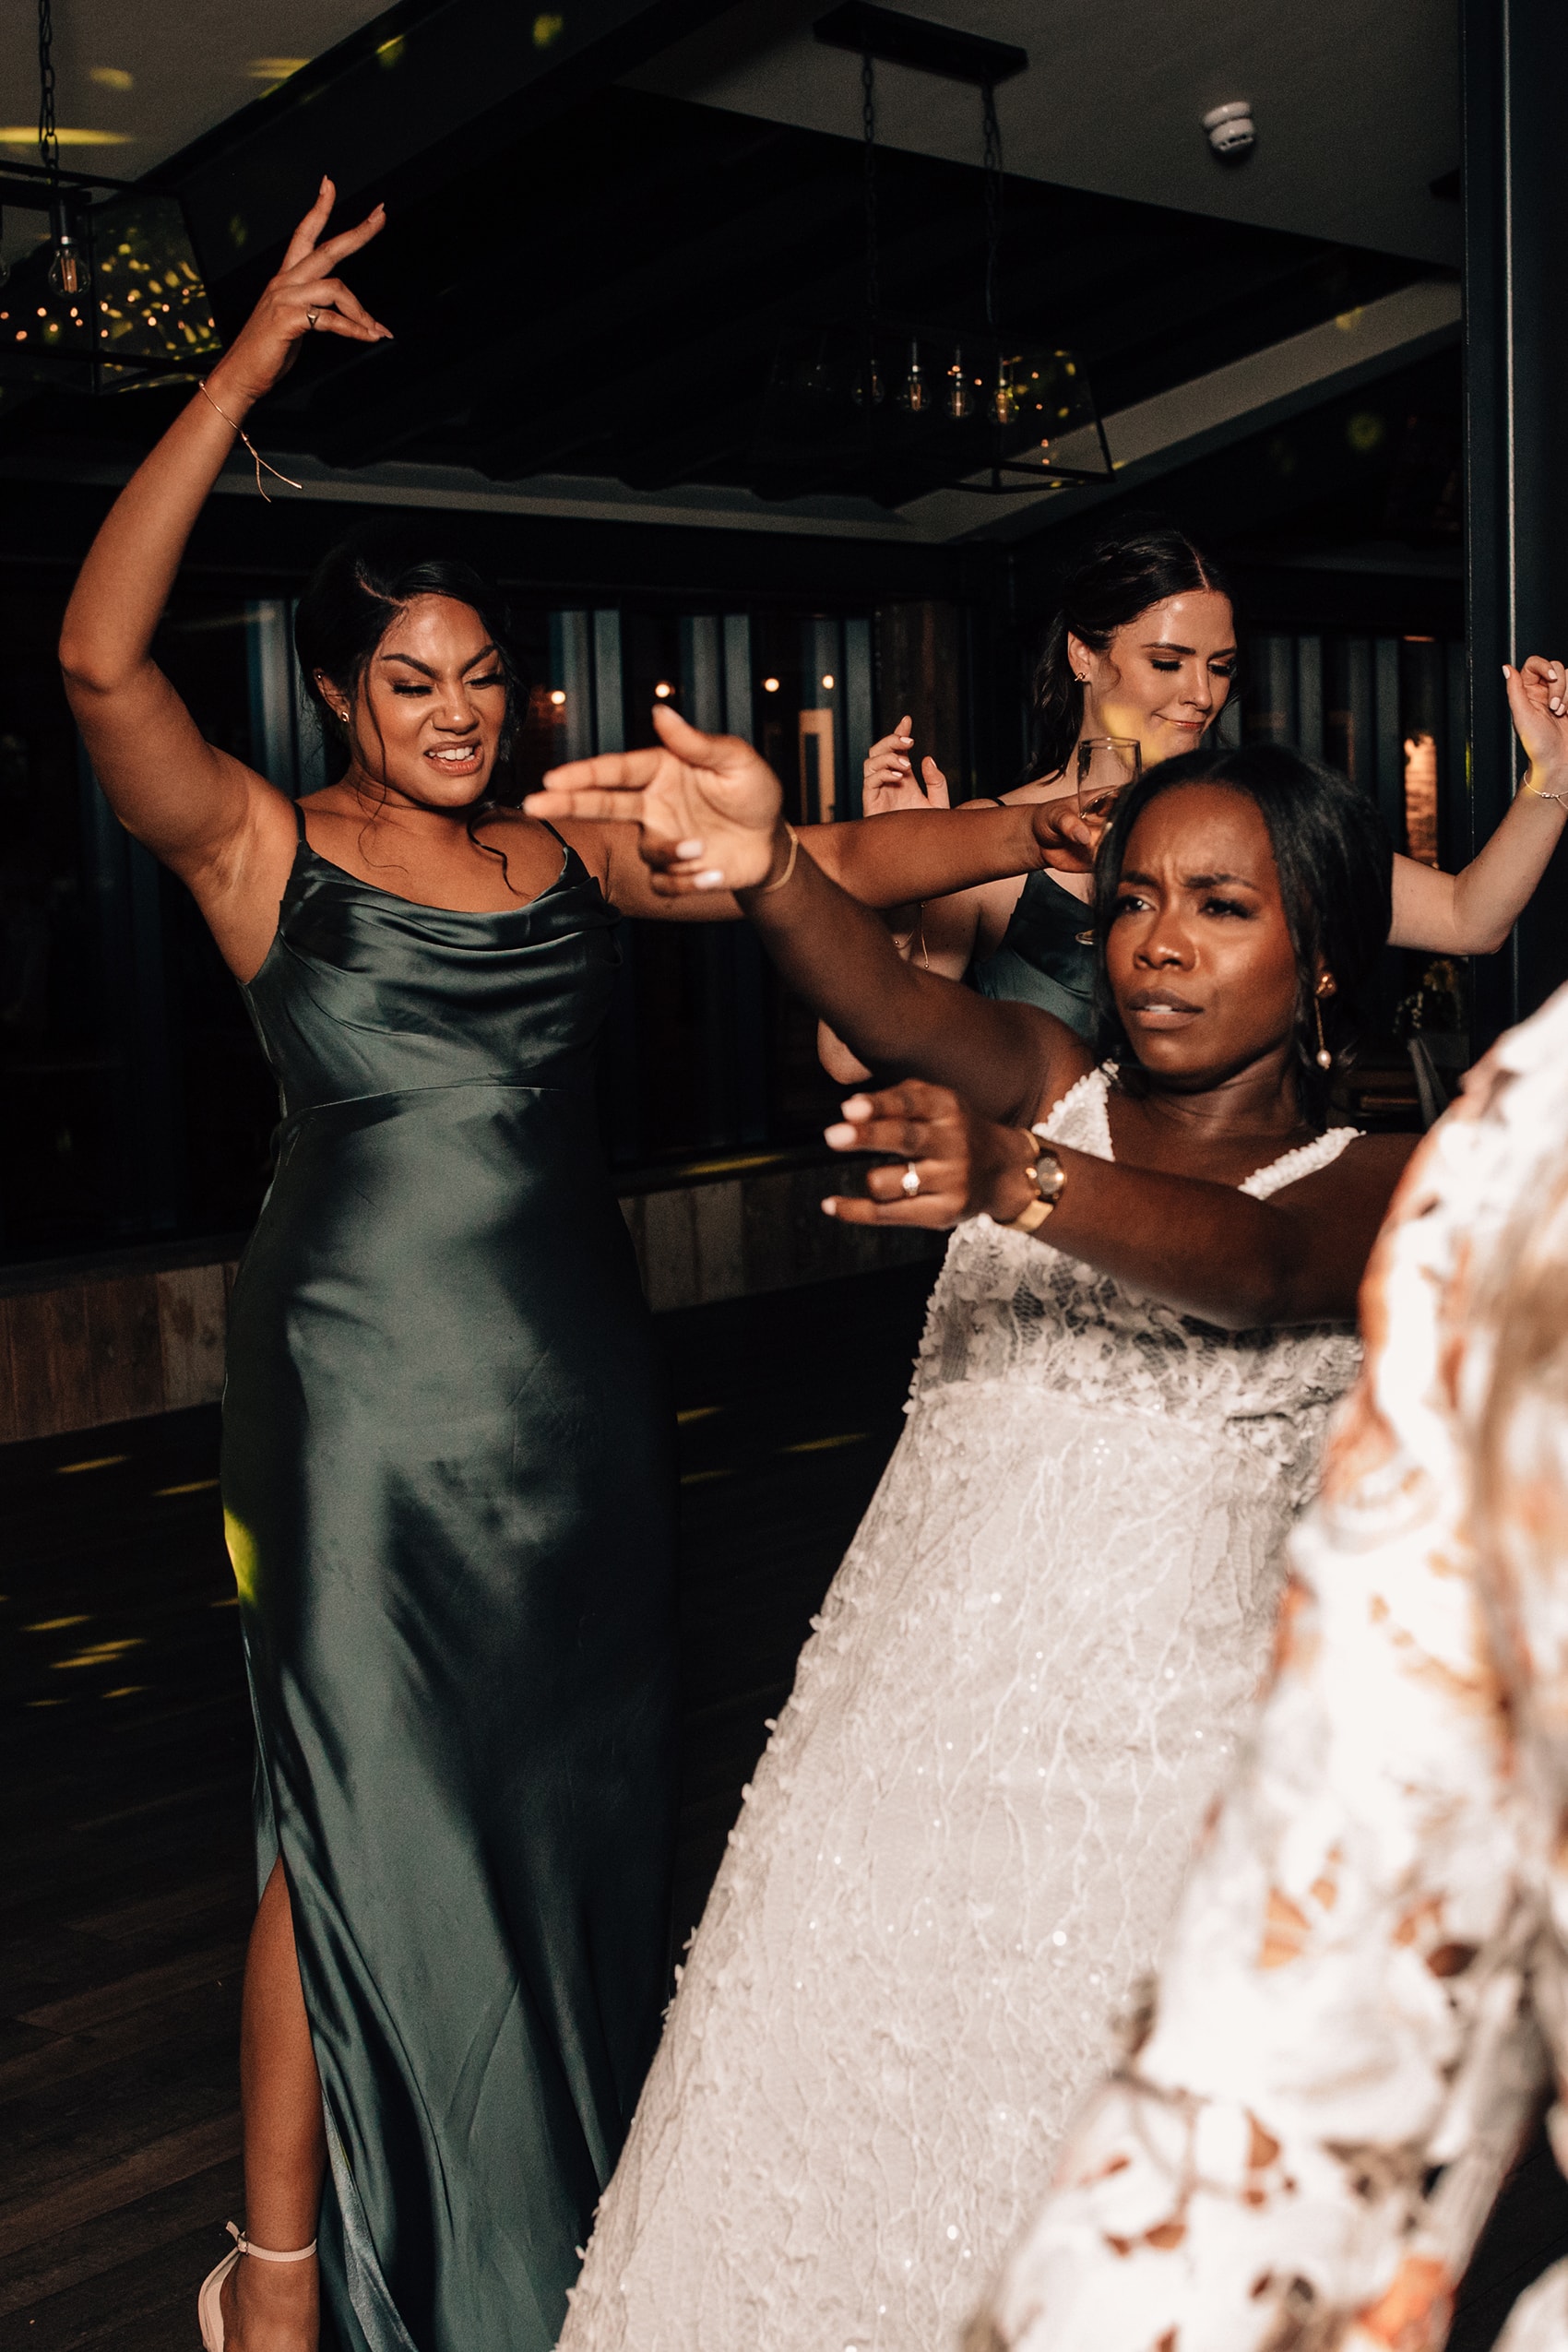 wild wedding dance-floor bride dancing